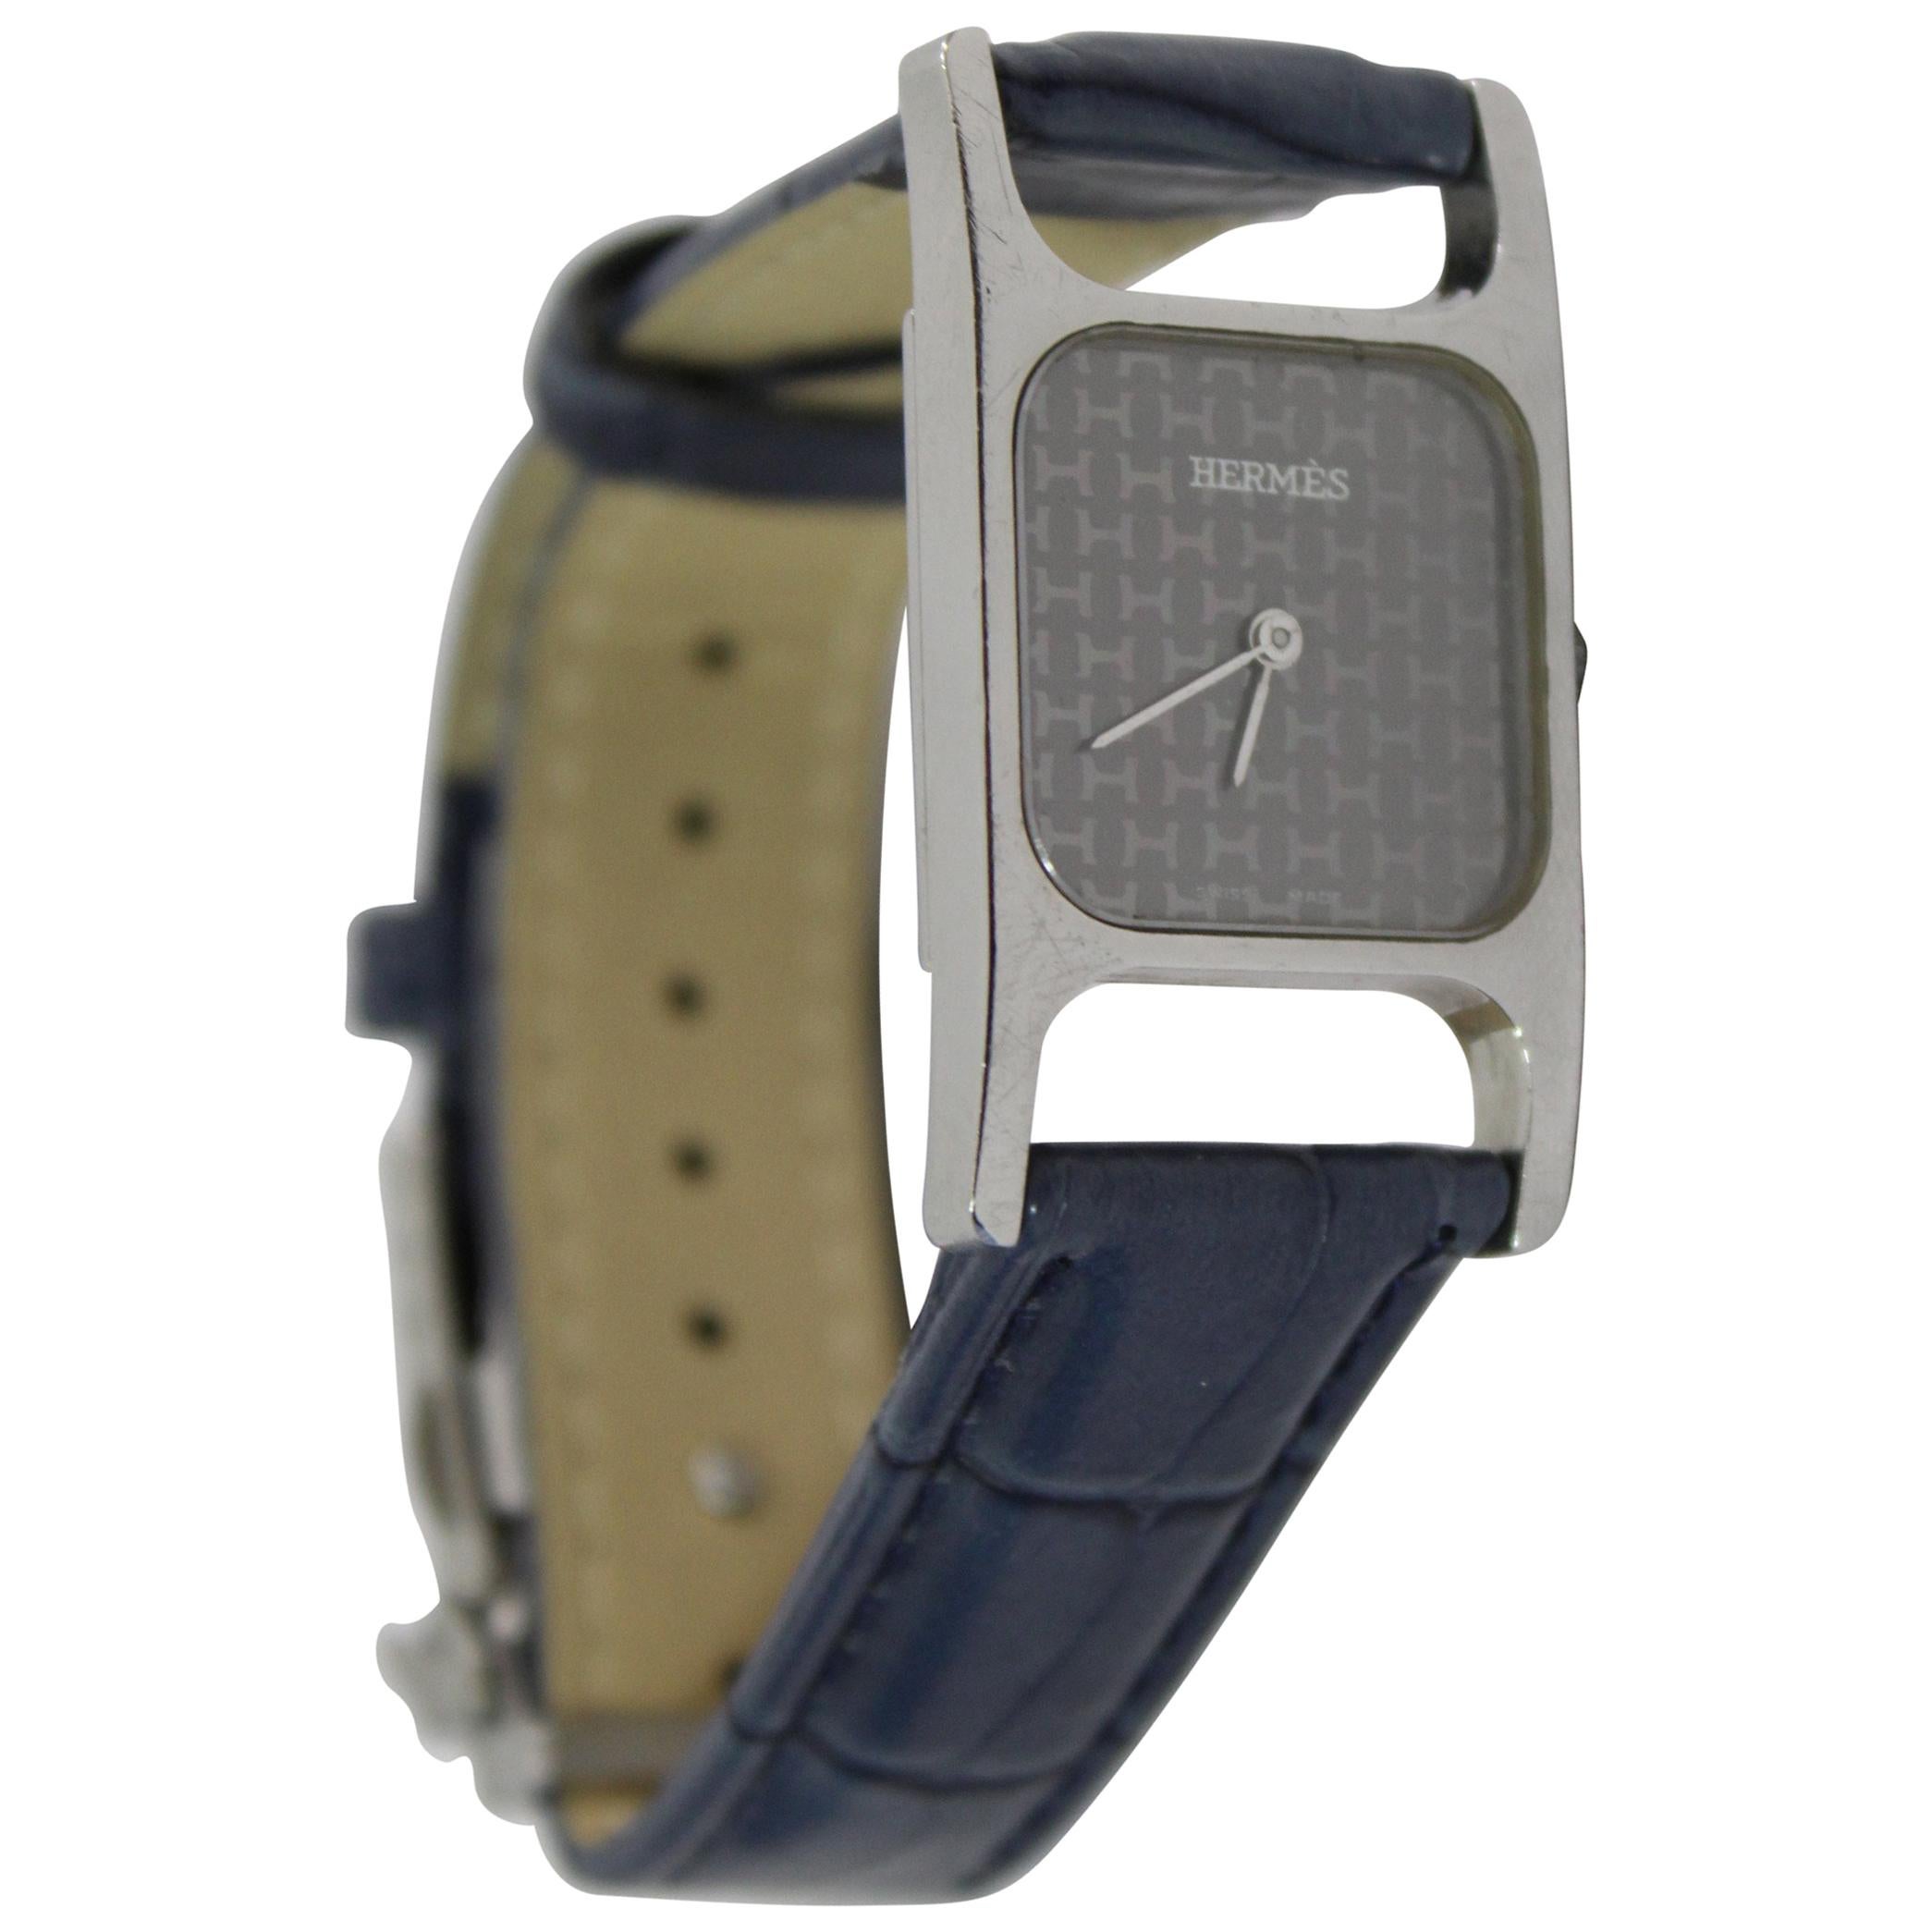 Hermès by Corum Stainless Steel H Vintage Quartz Watch